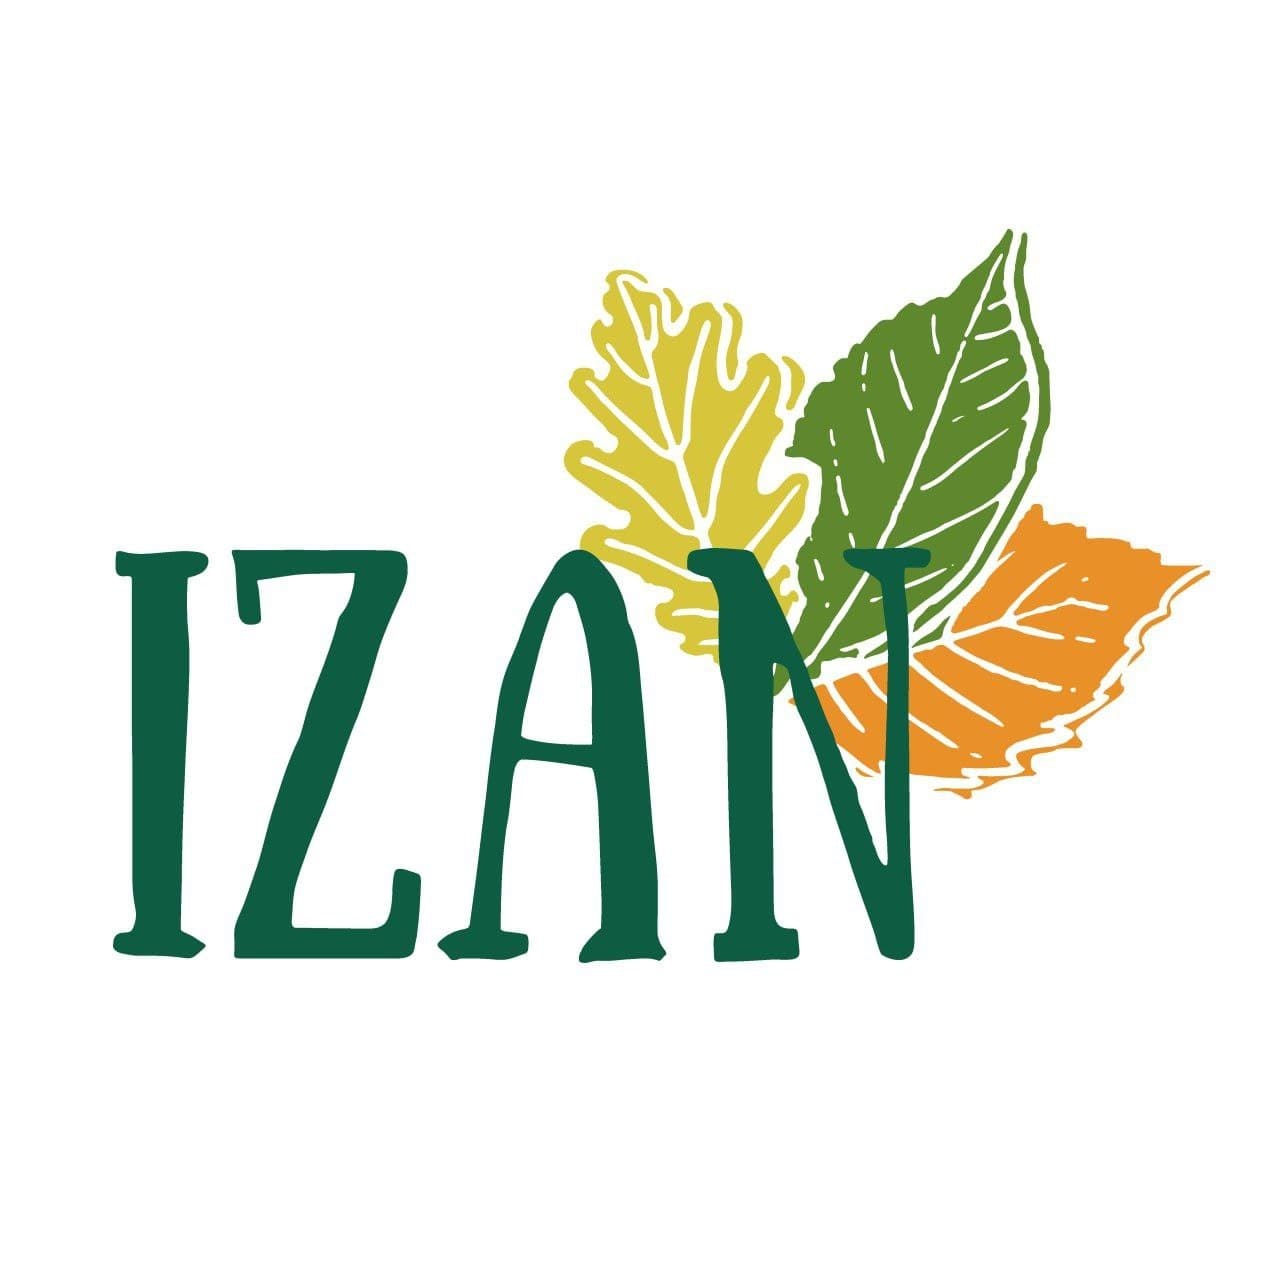 IZAN (IZAN) hauteskunde-zerrendaren logotipoa